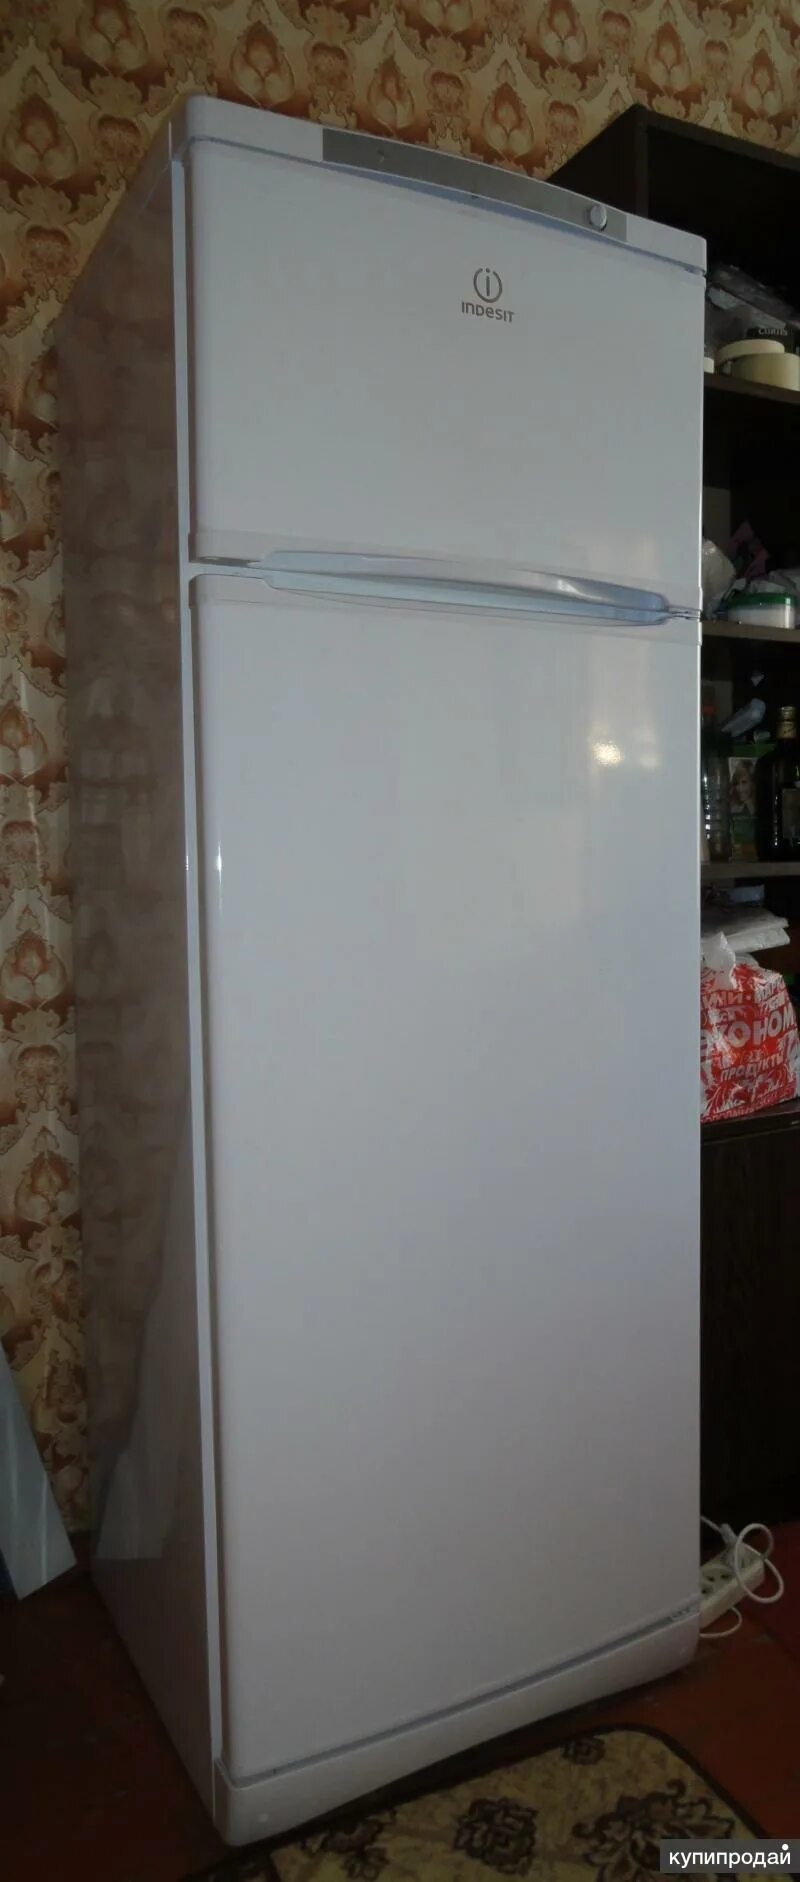 Индезит холодильник двухкамерный Индезит. Холодильник Индезит двухкамерный 2м. Холодильник двухкамерный Индезит 2010. Холодильник двухкамерный Индезит lb 201. Холодильник индезит двухкамерный модели